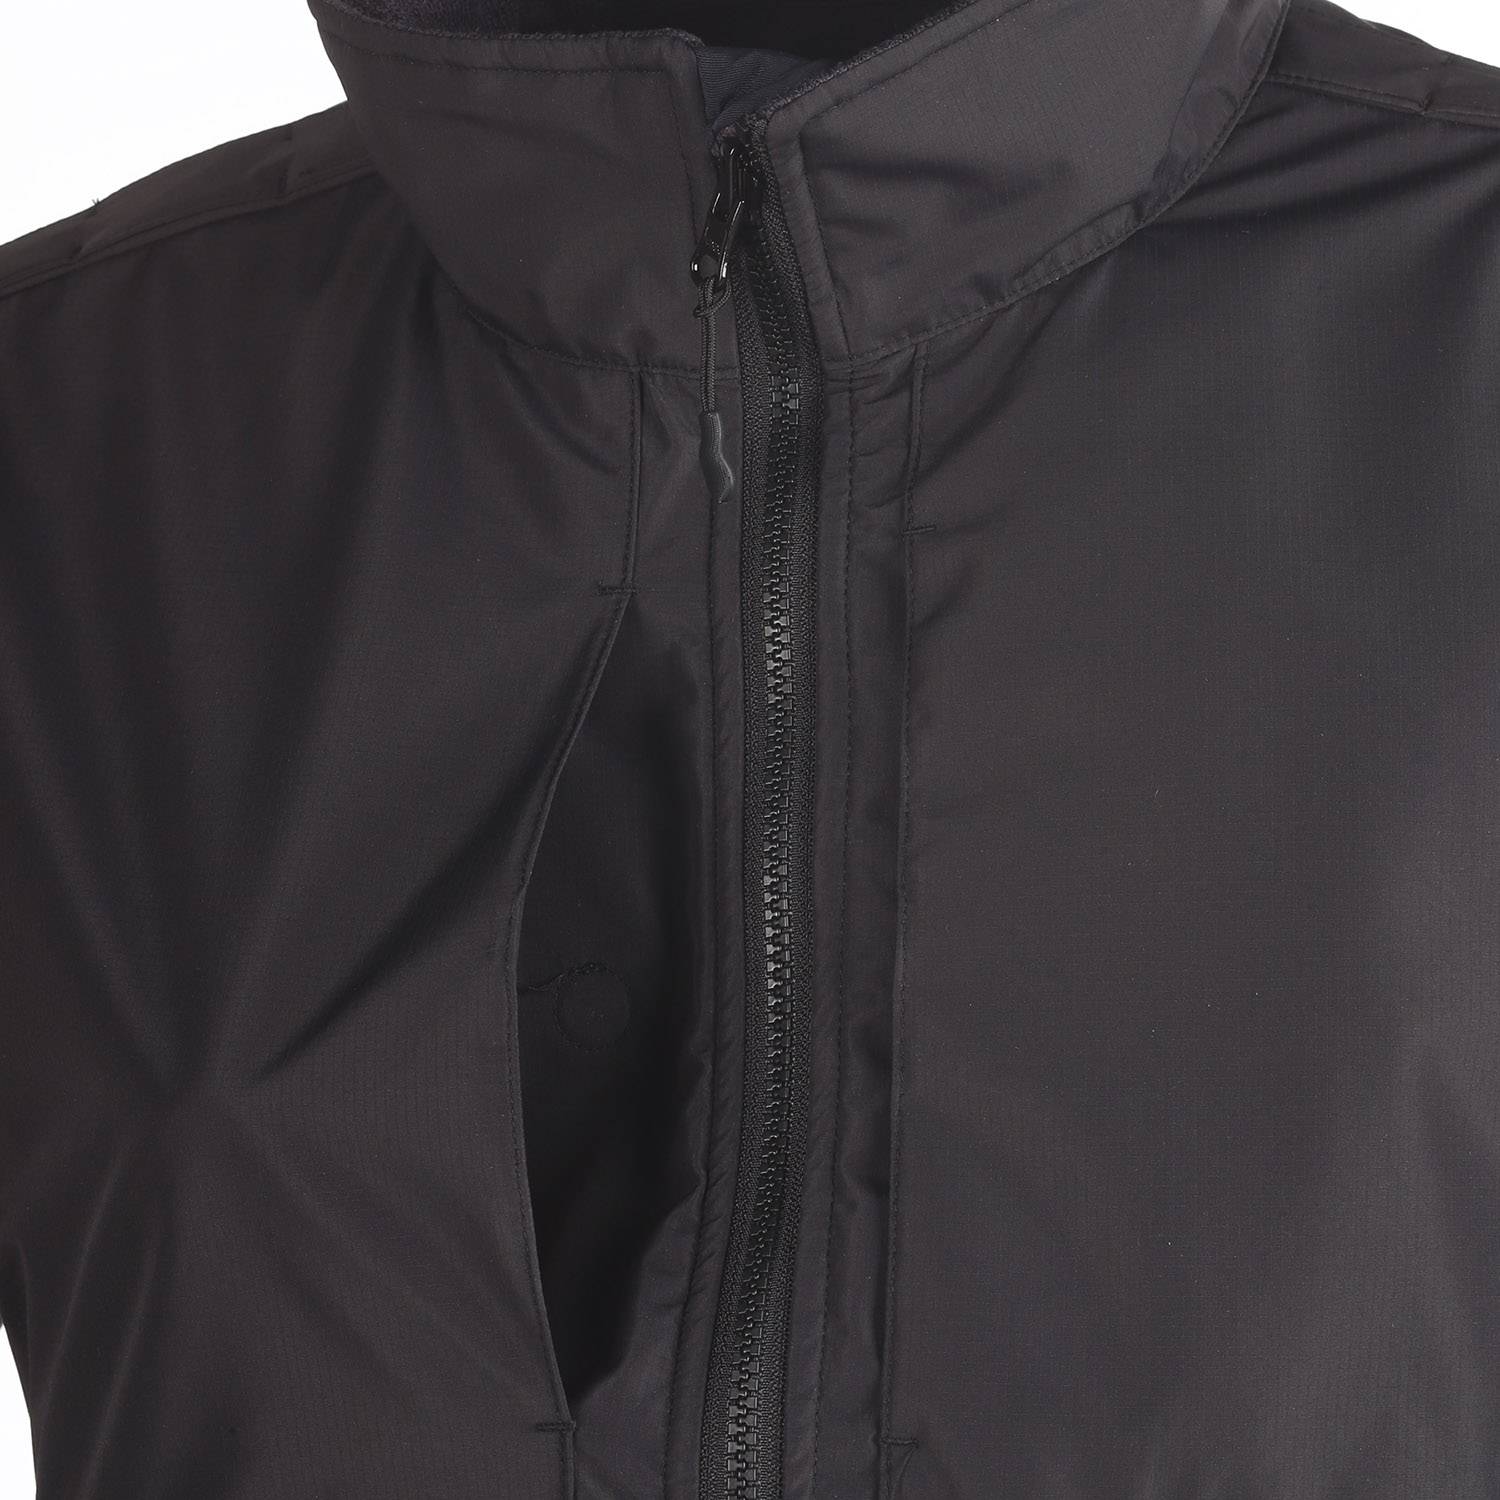 Elbeco Shield Apex Crossover Softshell Jacket